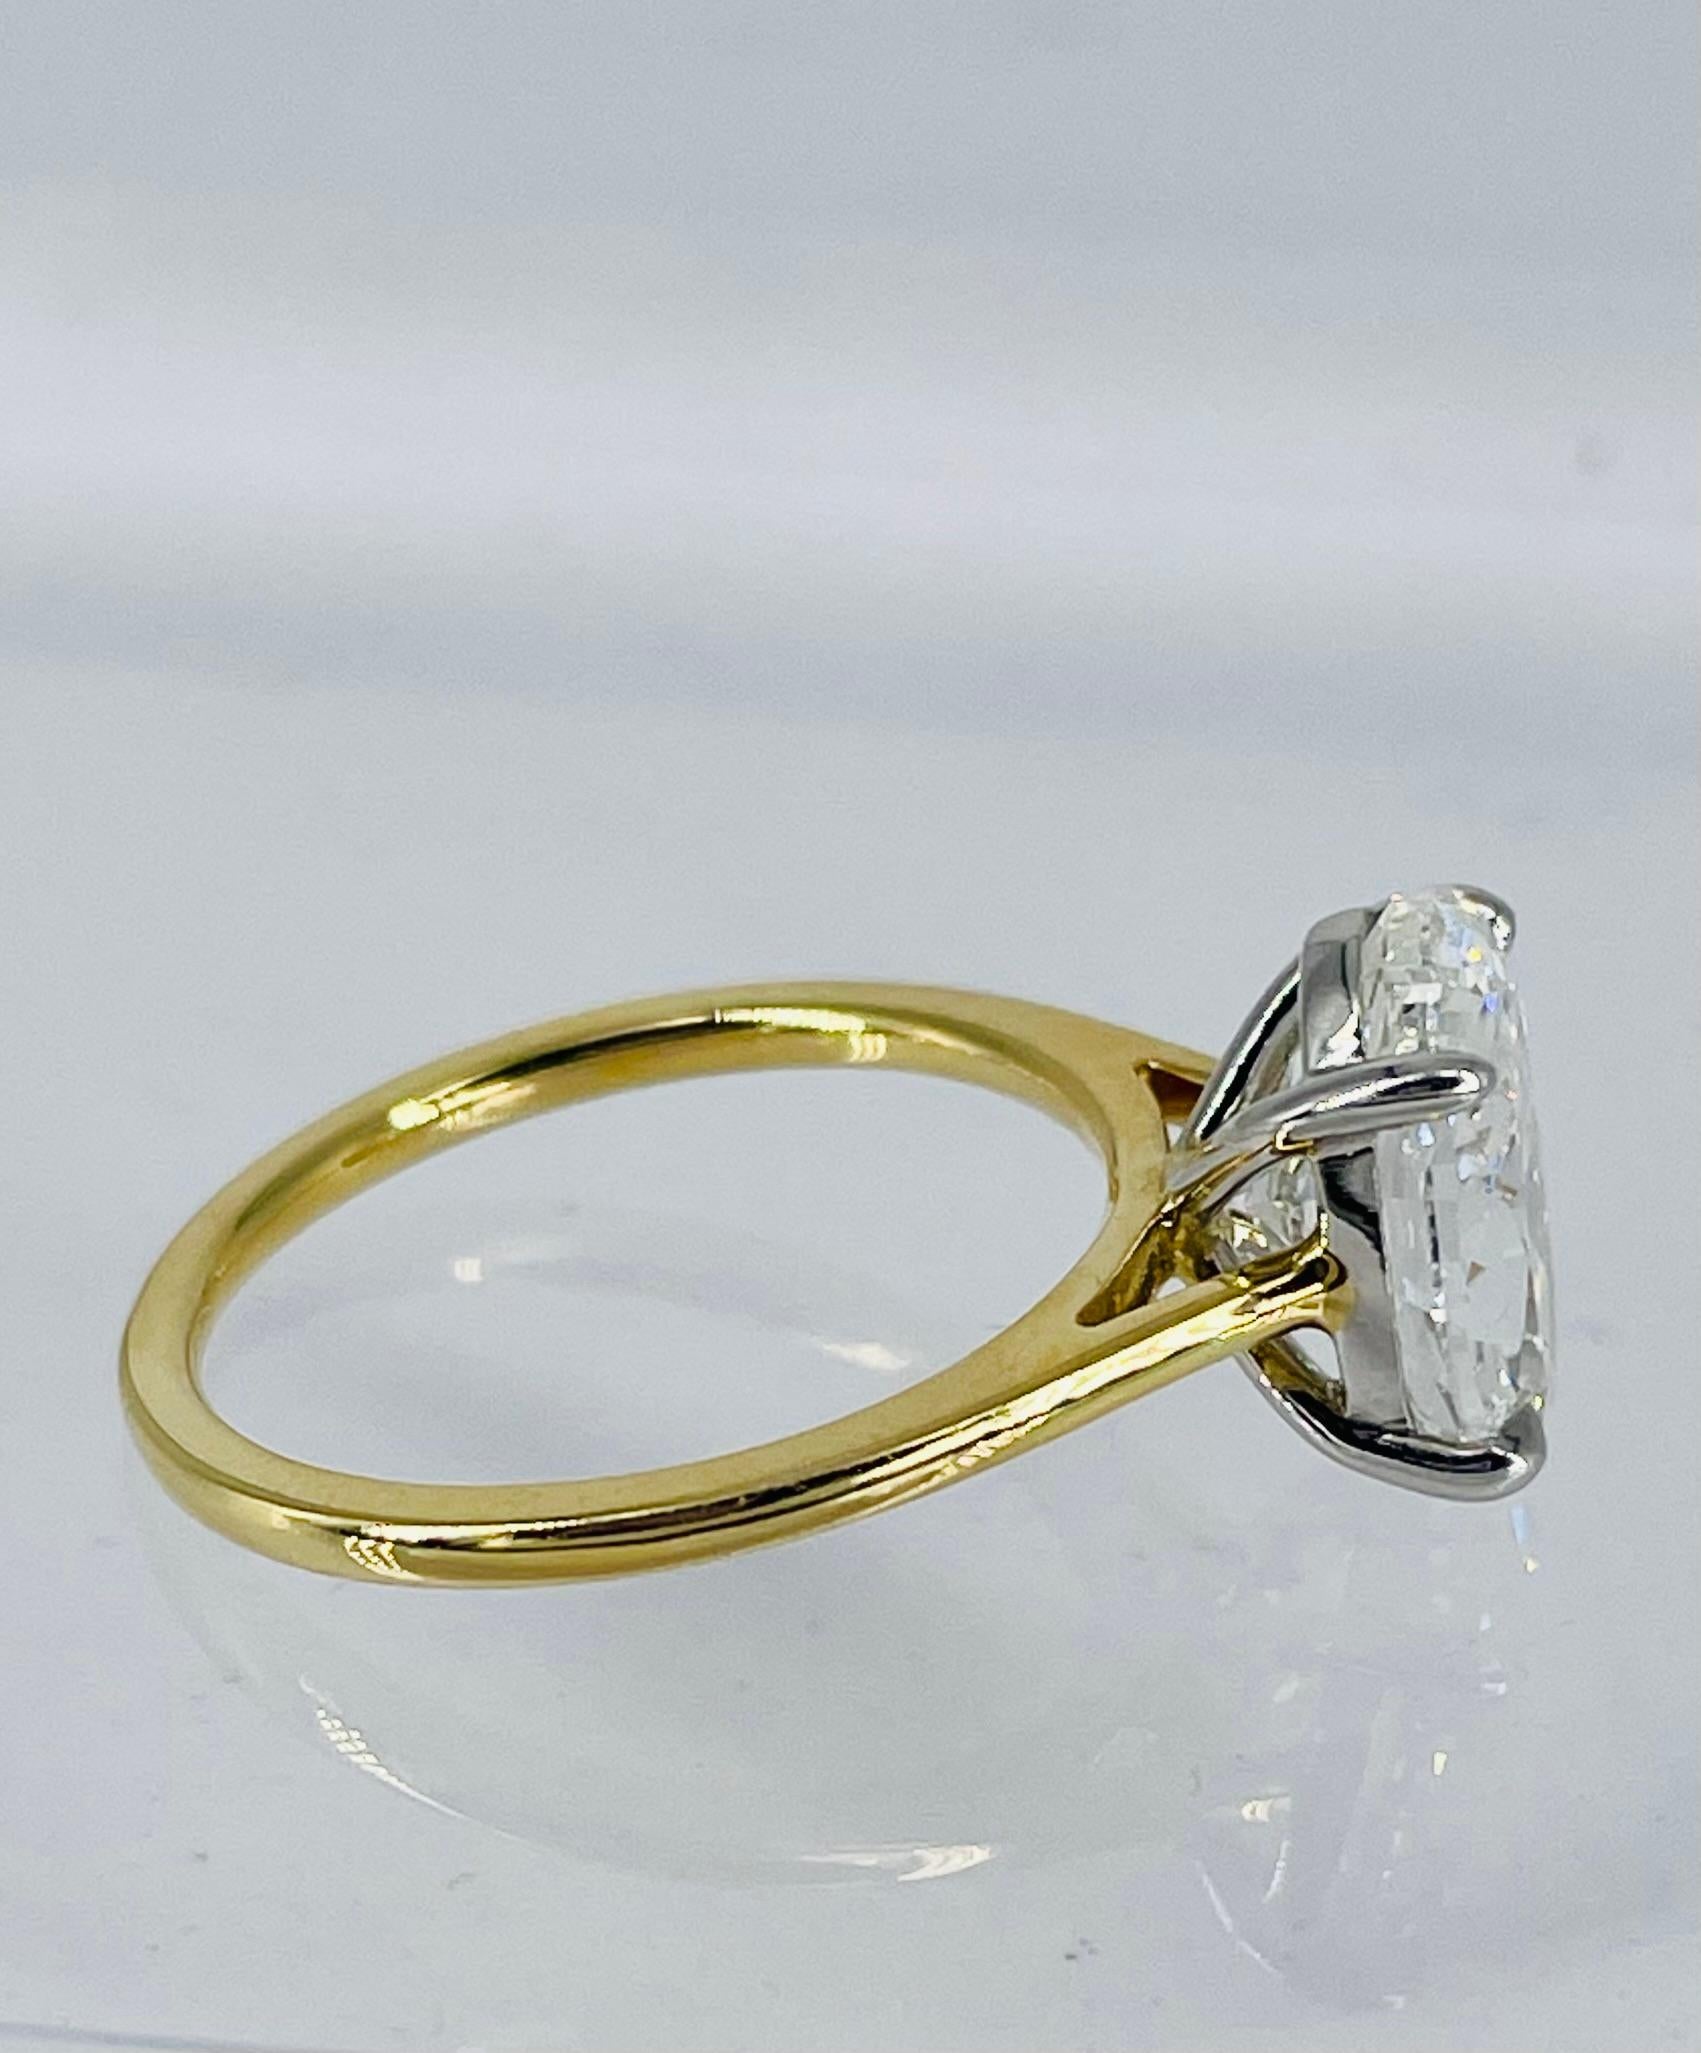 Ce solitaire étincelant de J. Birnbach est orné d'un magnifique diamant ovale de 3,01 carats, de couleur GIA et de pureté VS1. Ce diamant scintillant présente une belle proportion allongée qui flatte le doigt et constitue la forme la plus